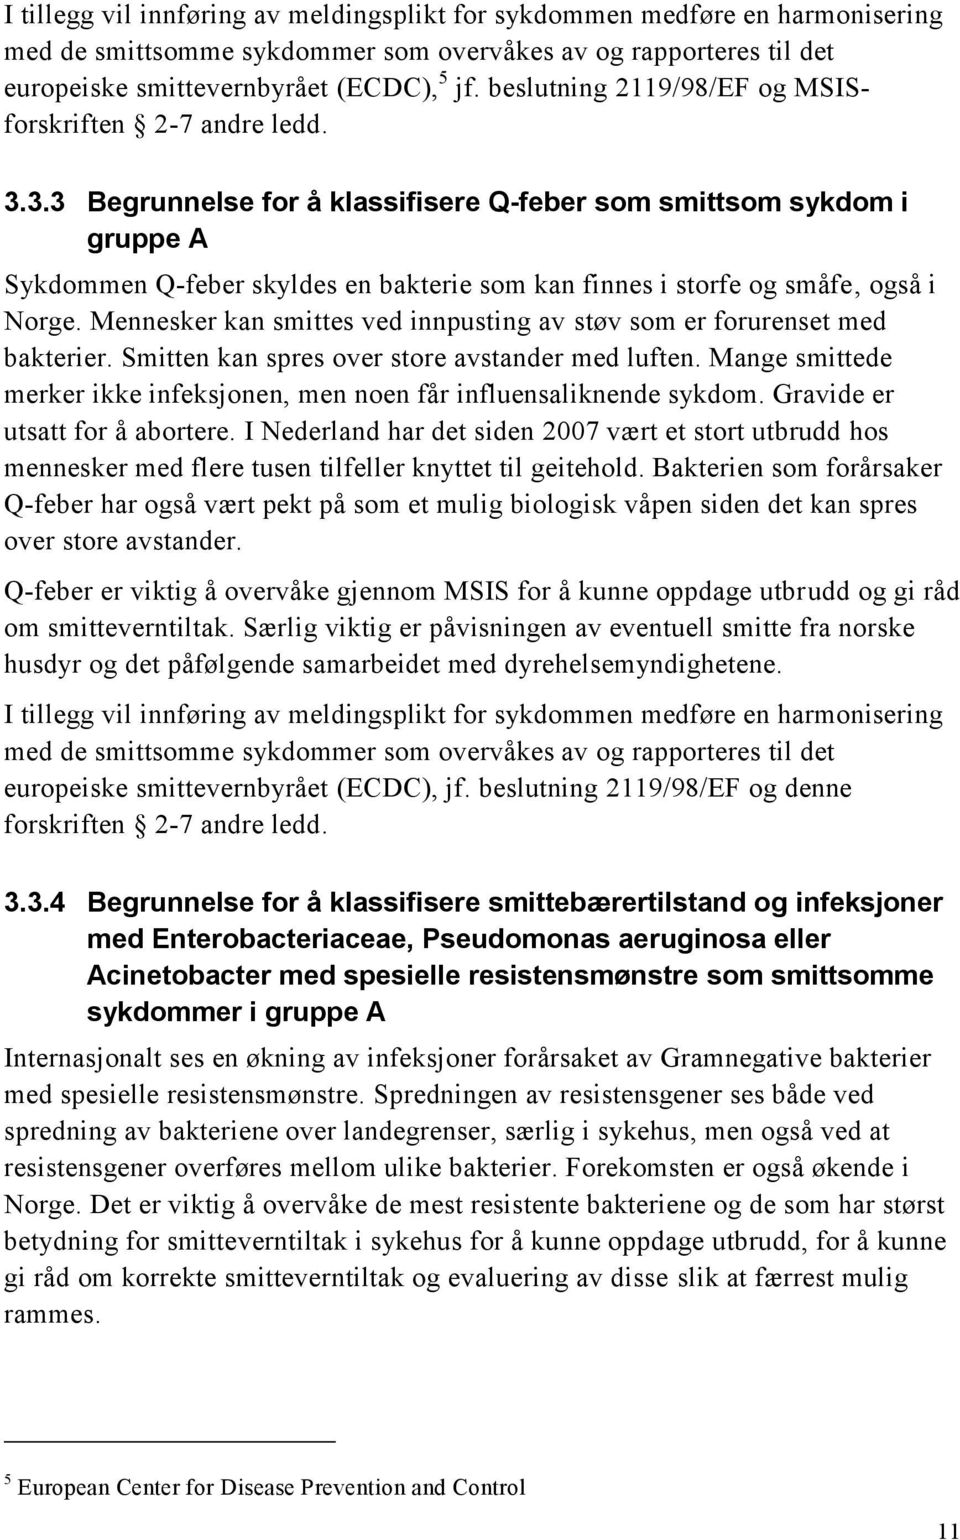 3.3 Begrunnelse for å klassifisere Q-feber som smittsom sykdom i gruppe A Sykdommen Q-feber skyldes en bakterie som kan finnes i storfe og småfe, også i Norge.